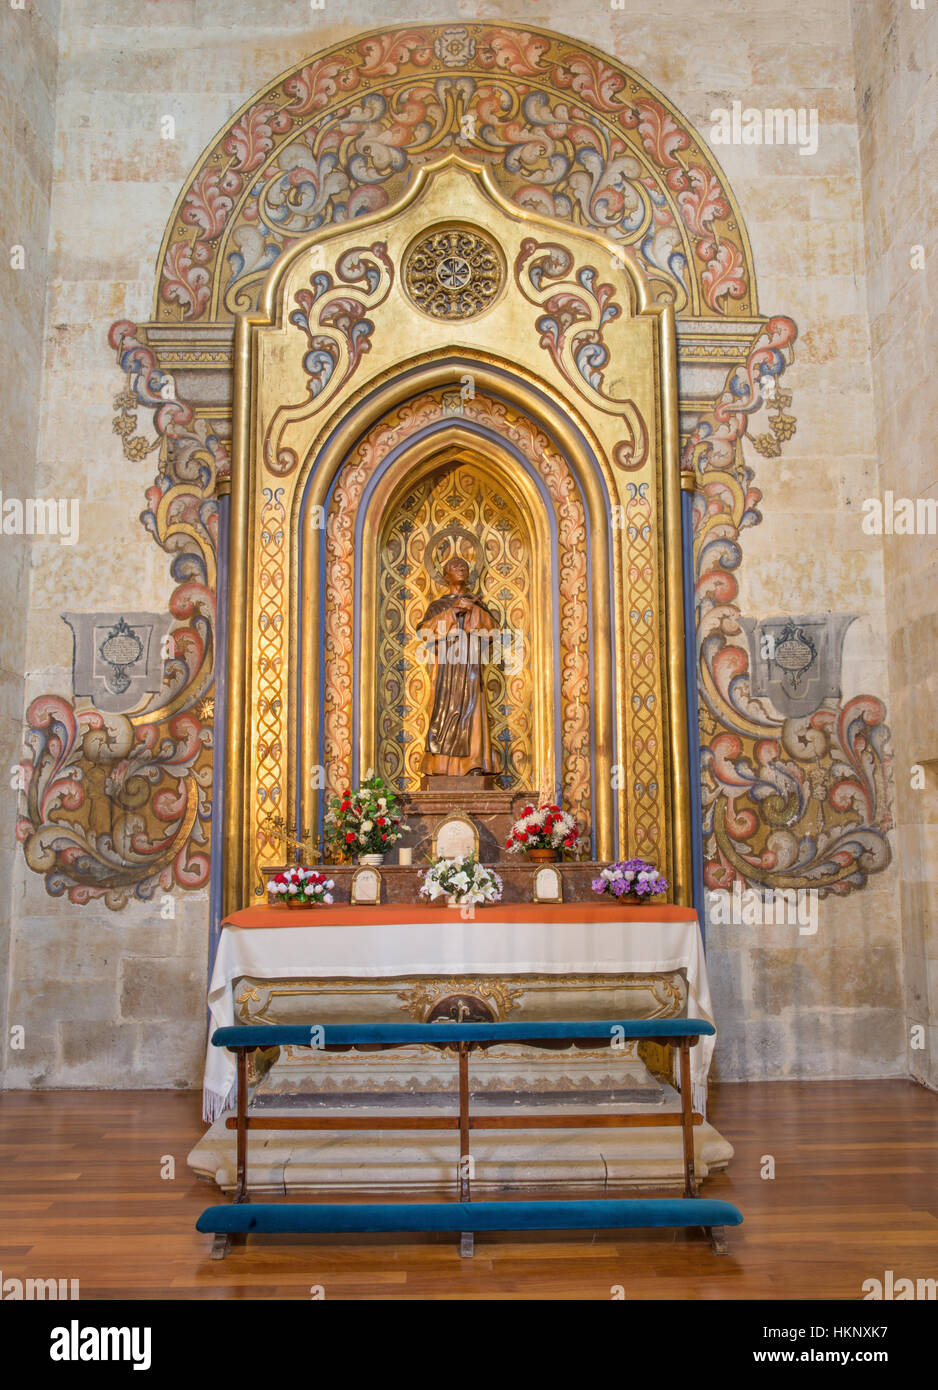 San martin de porres church hi-res stock photography and images - Alamy